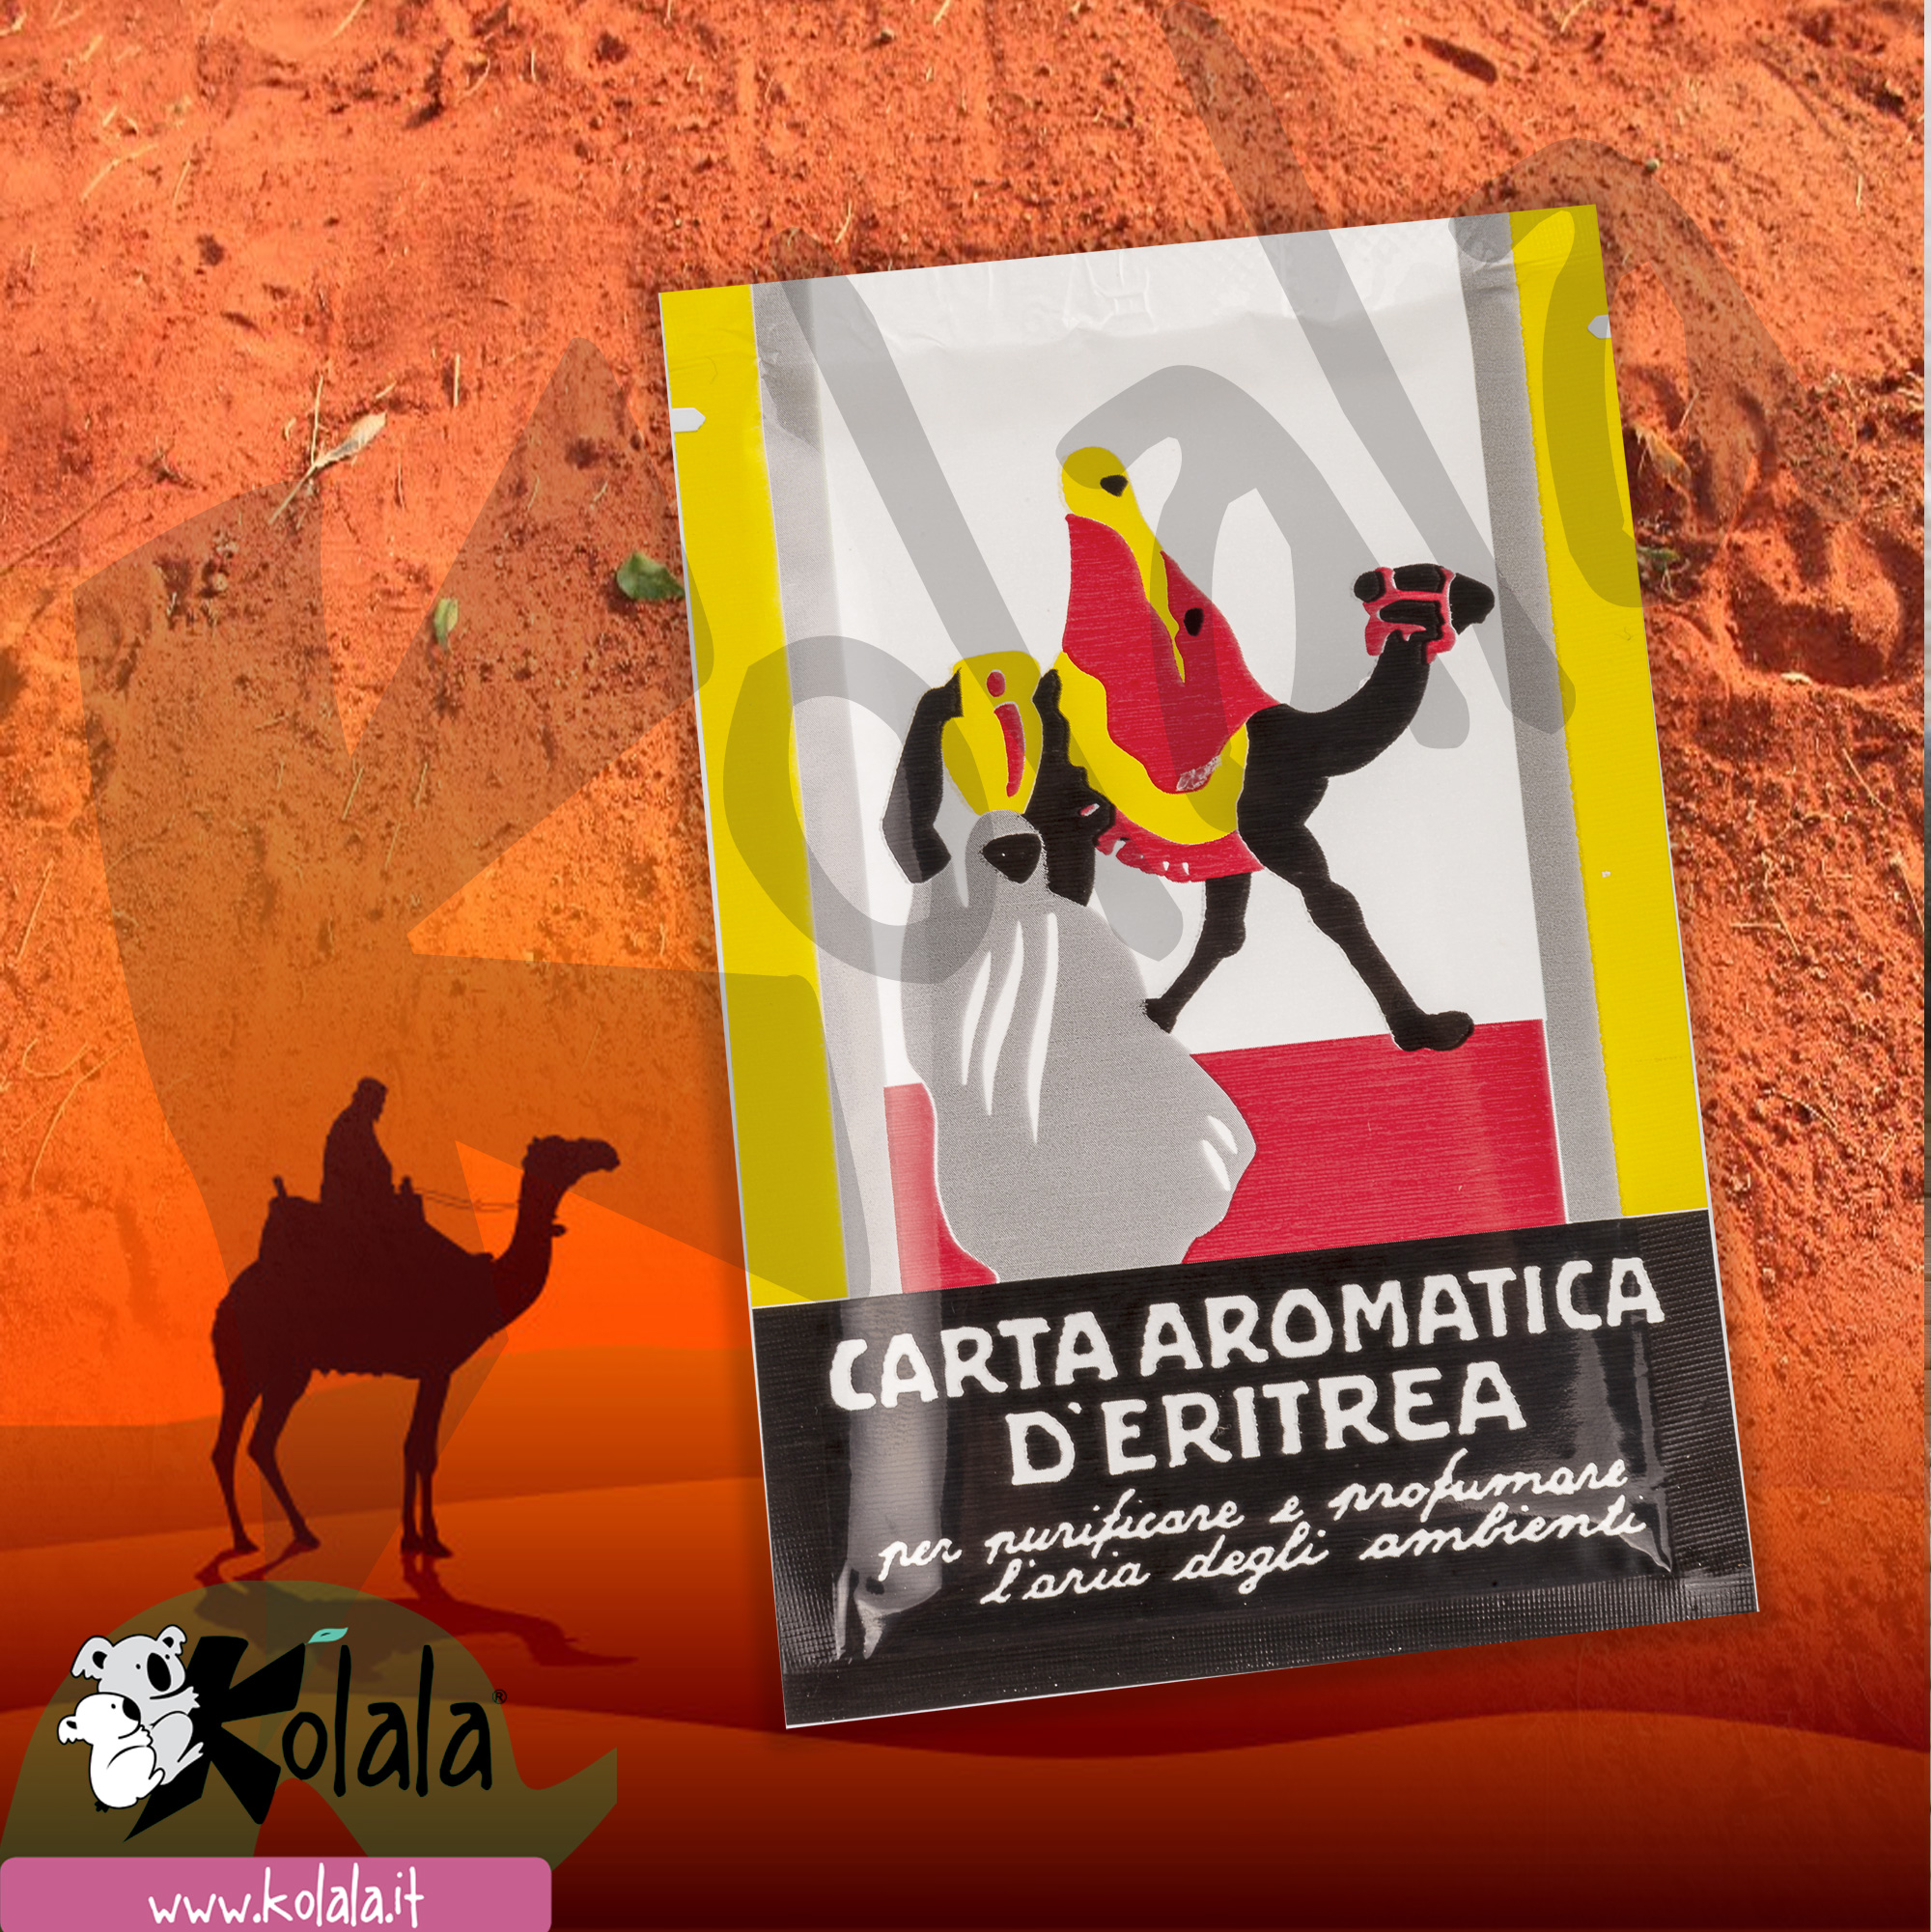 https://www.kolala.it/wp-content/uploads/2021/01/carta-eritrea.jpg